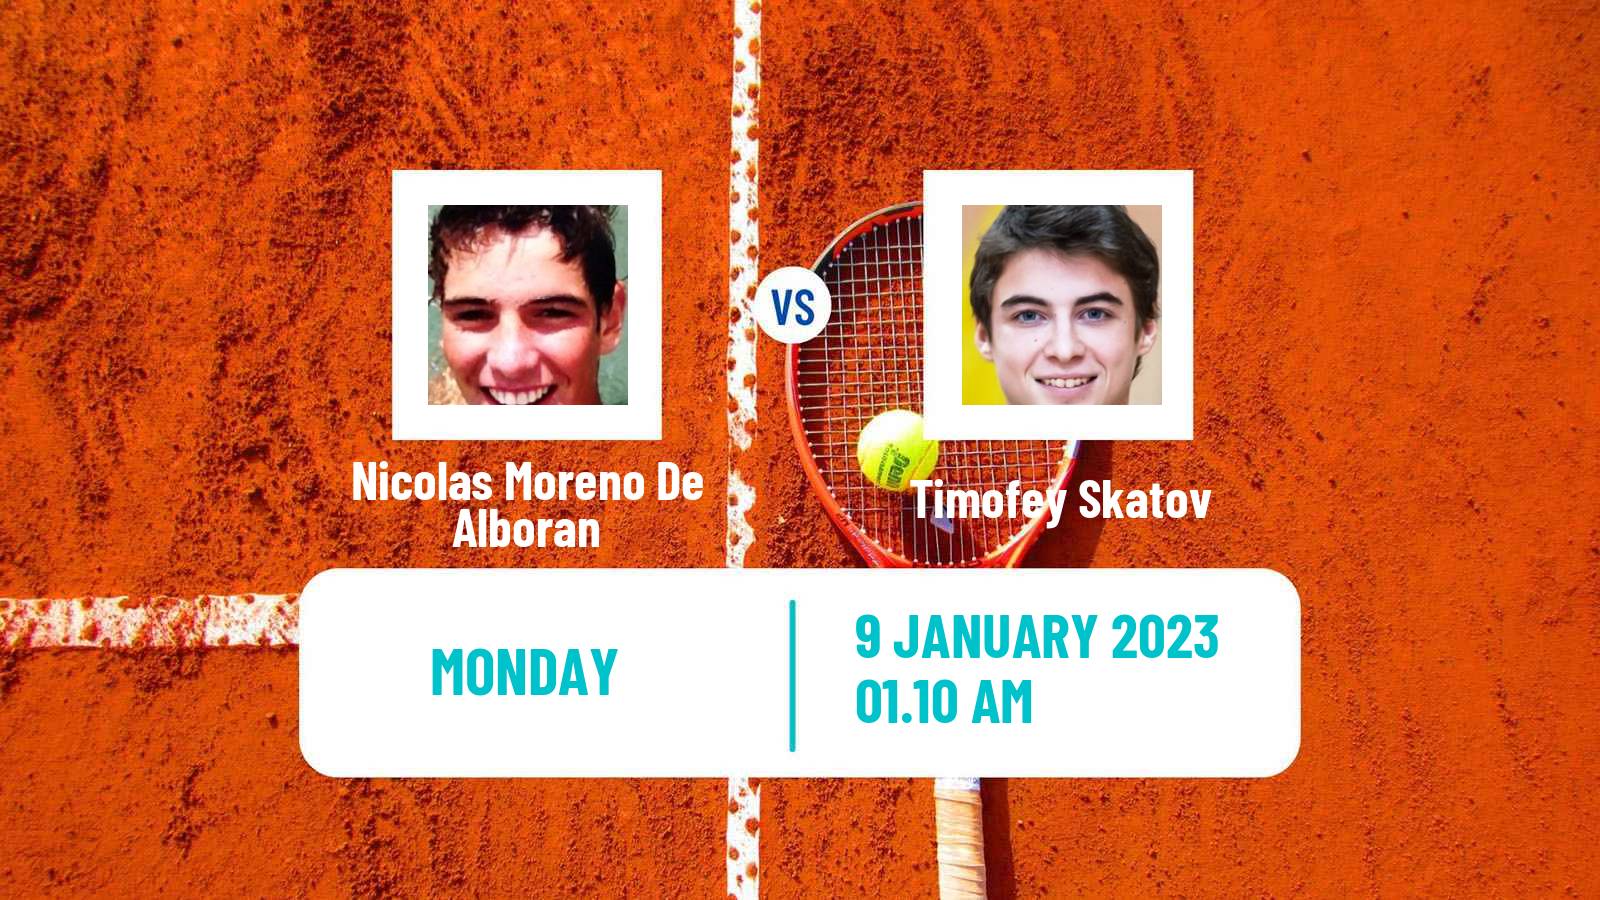 Tennis ATP Australian Open Nicolas Moreno De Alboran - Timofey Skatov